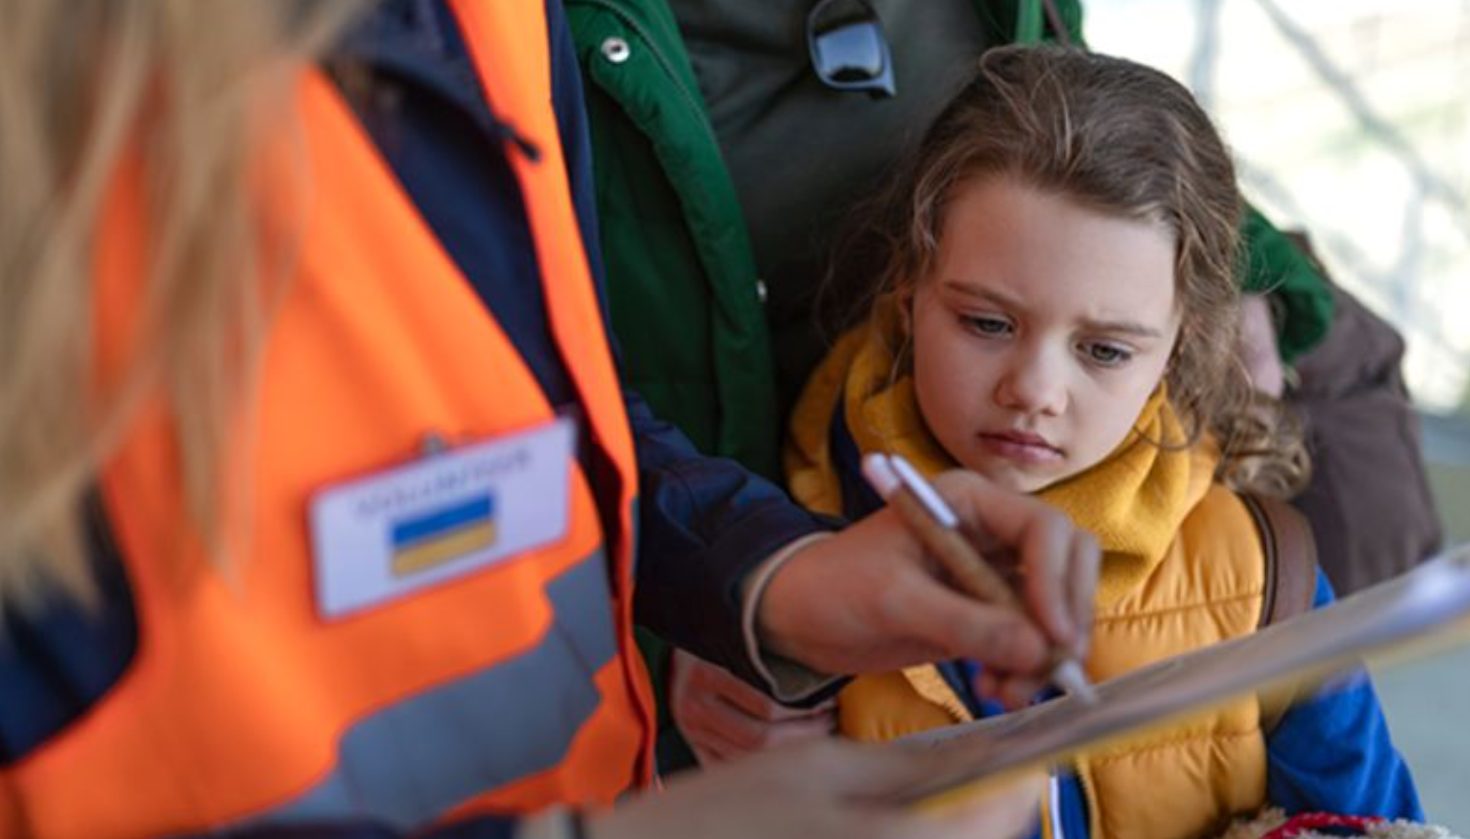 У Запоріжжі проведуть примусову евакуацію дітей - потрібно вивезти понад півсотні неповнолітніх  - фото 1